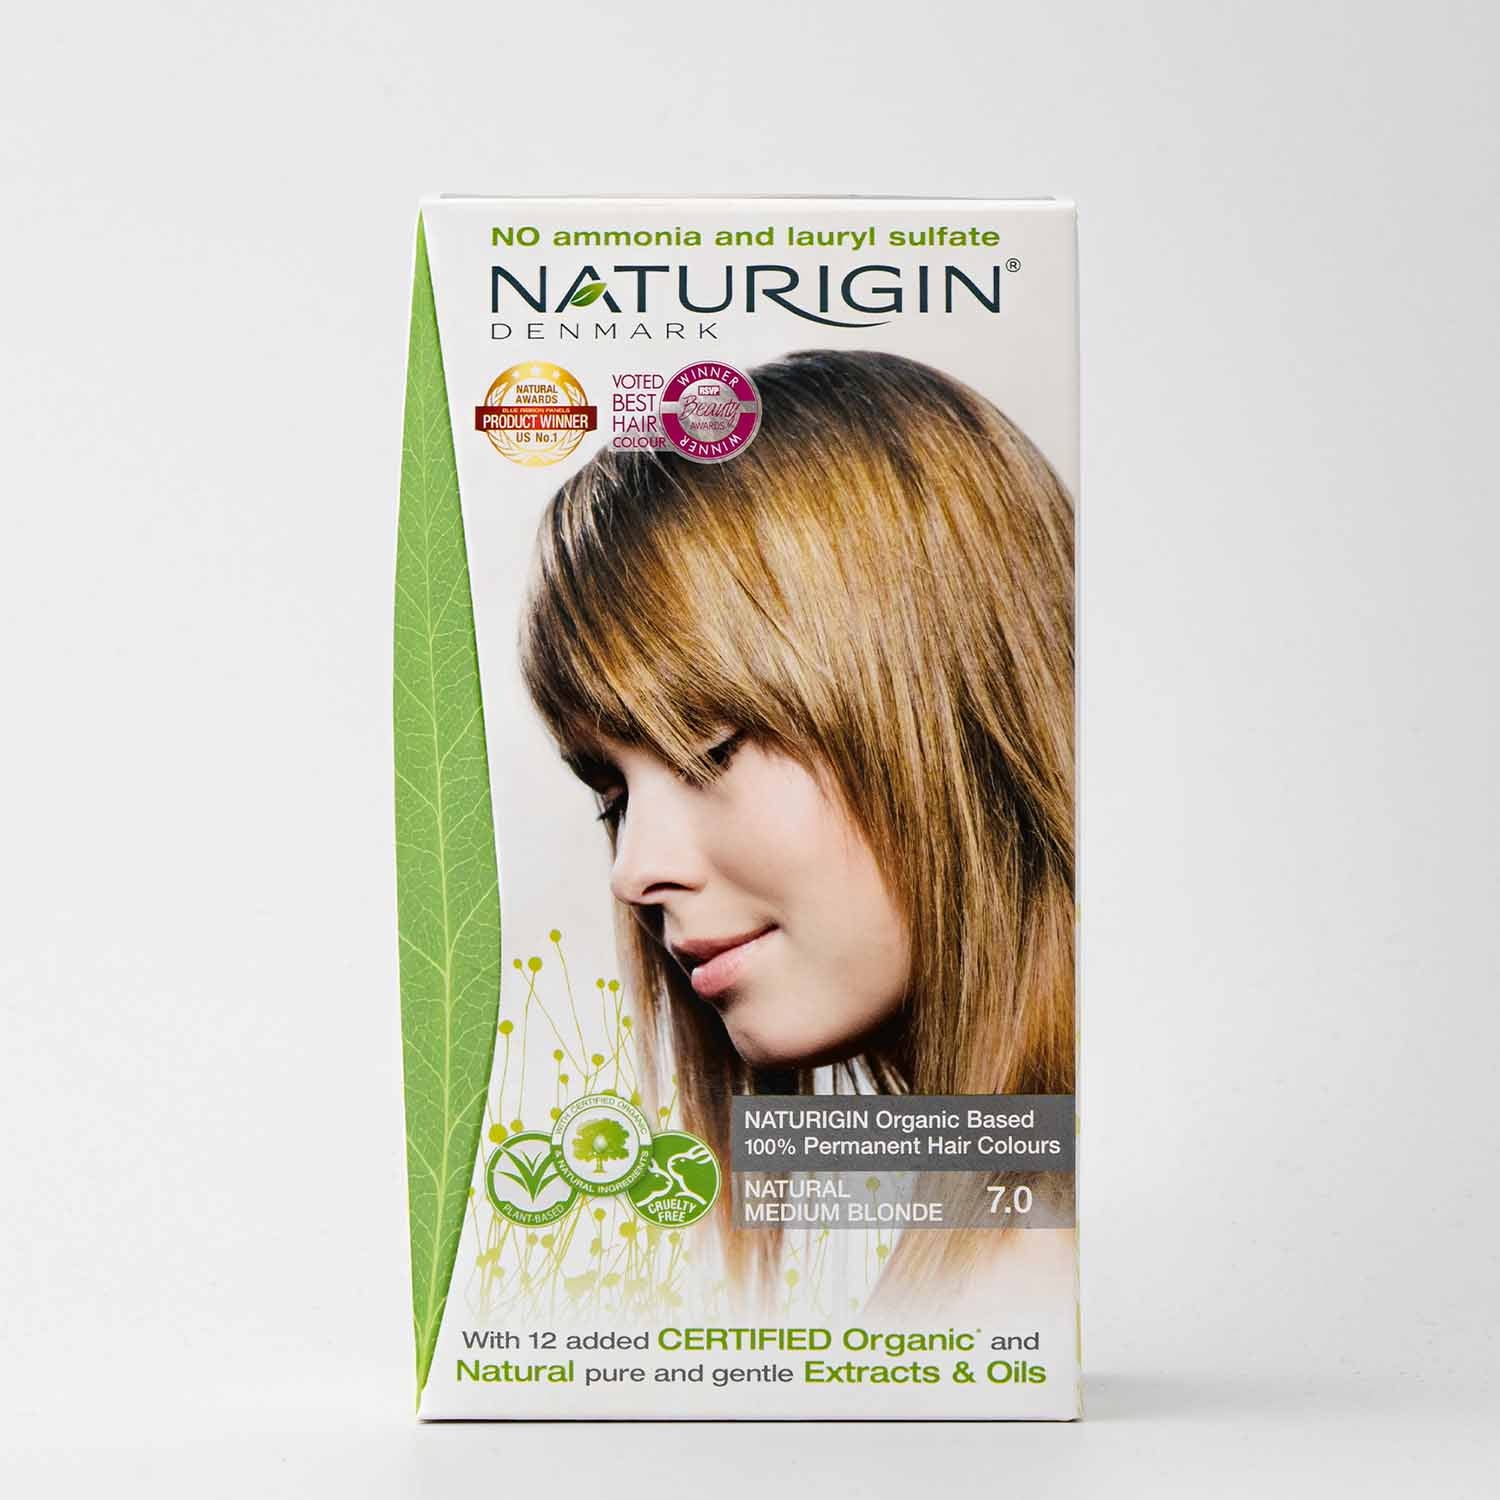 NATURIGIN Natural Medium Blonde 7.0 Hair Color, E11 Store